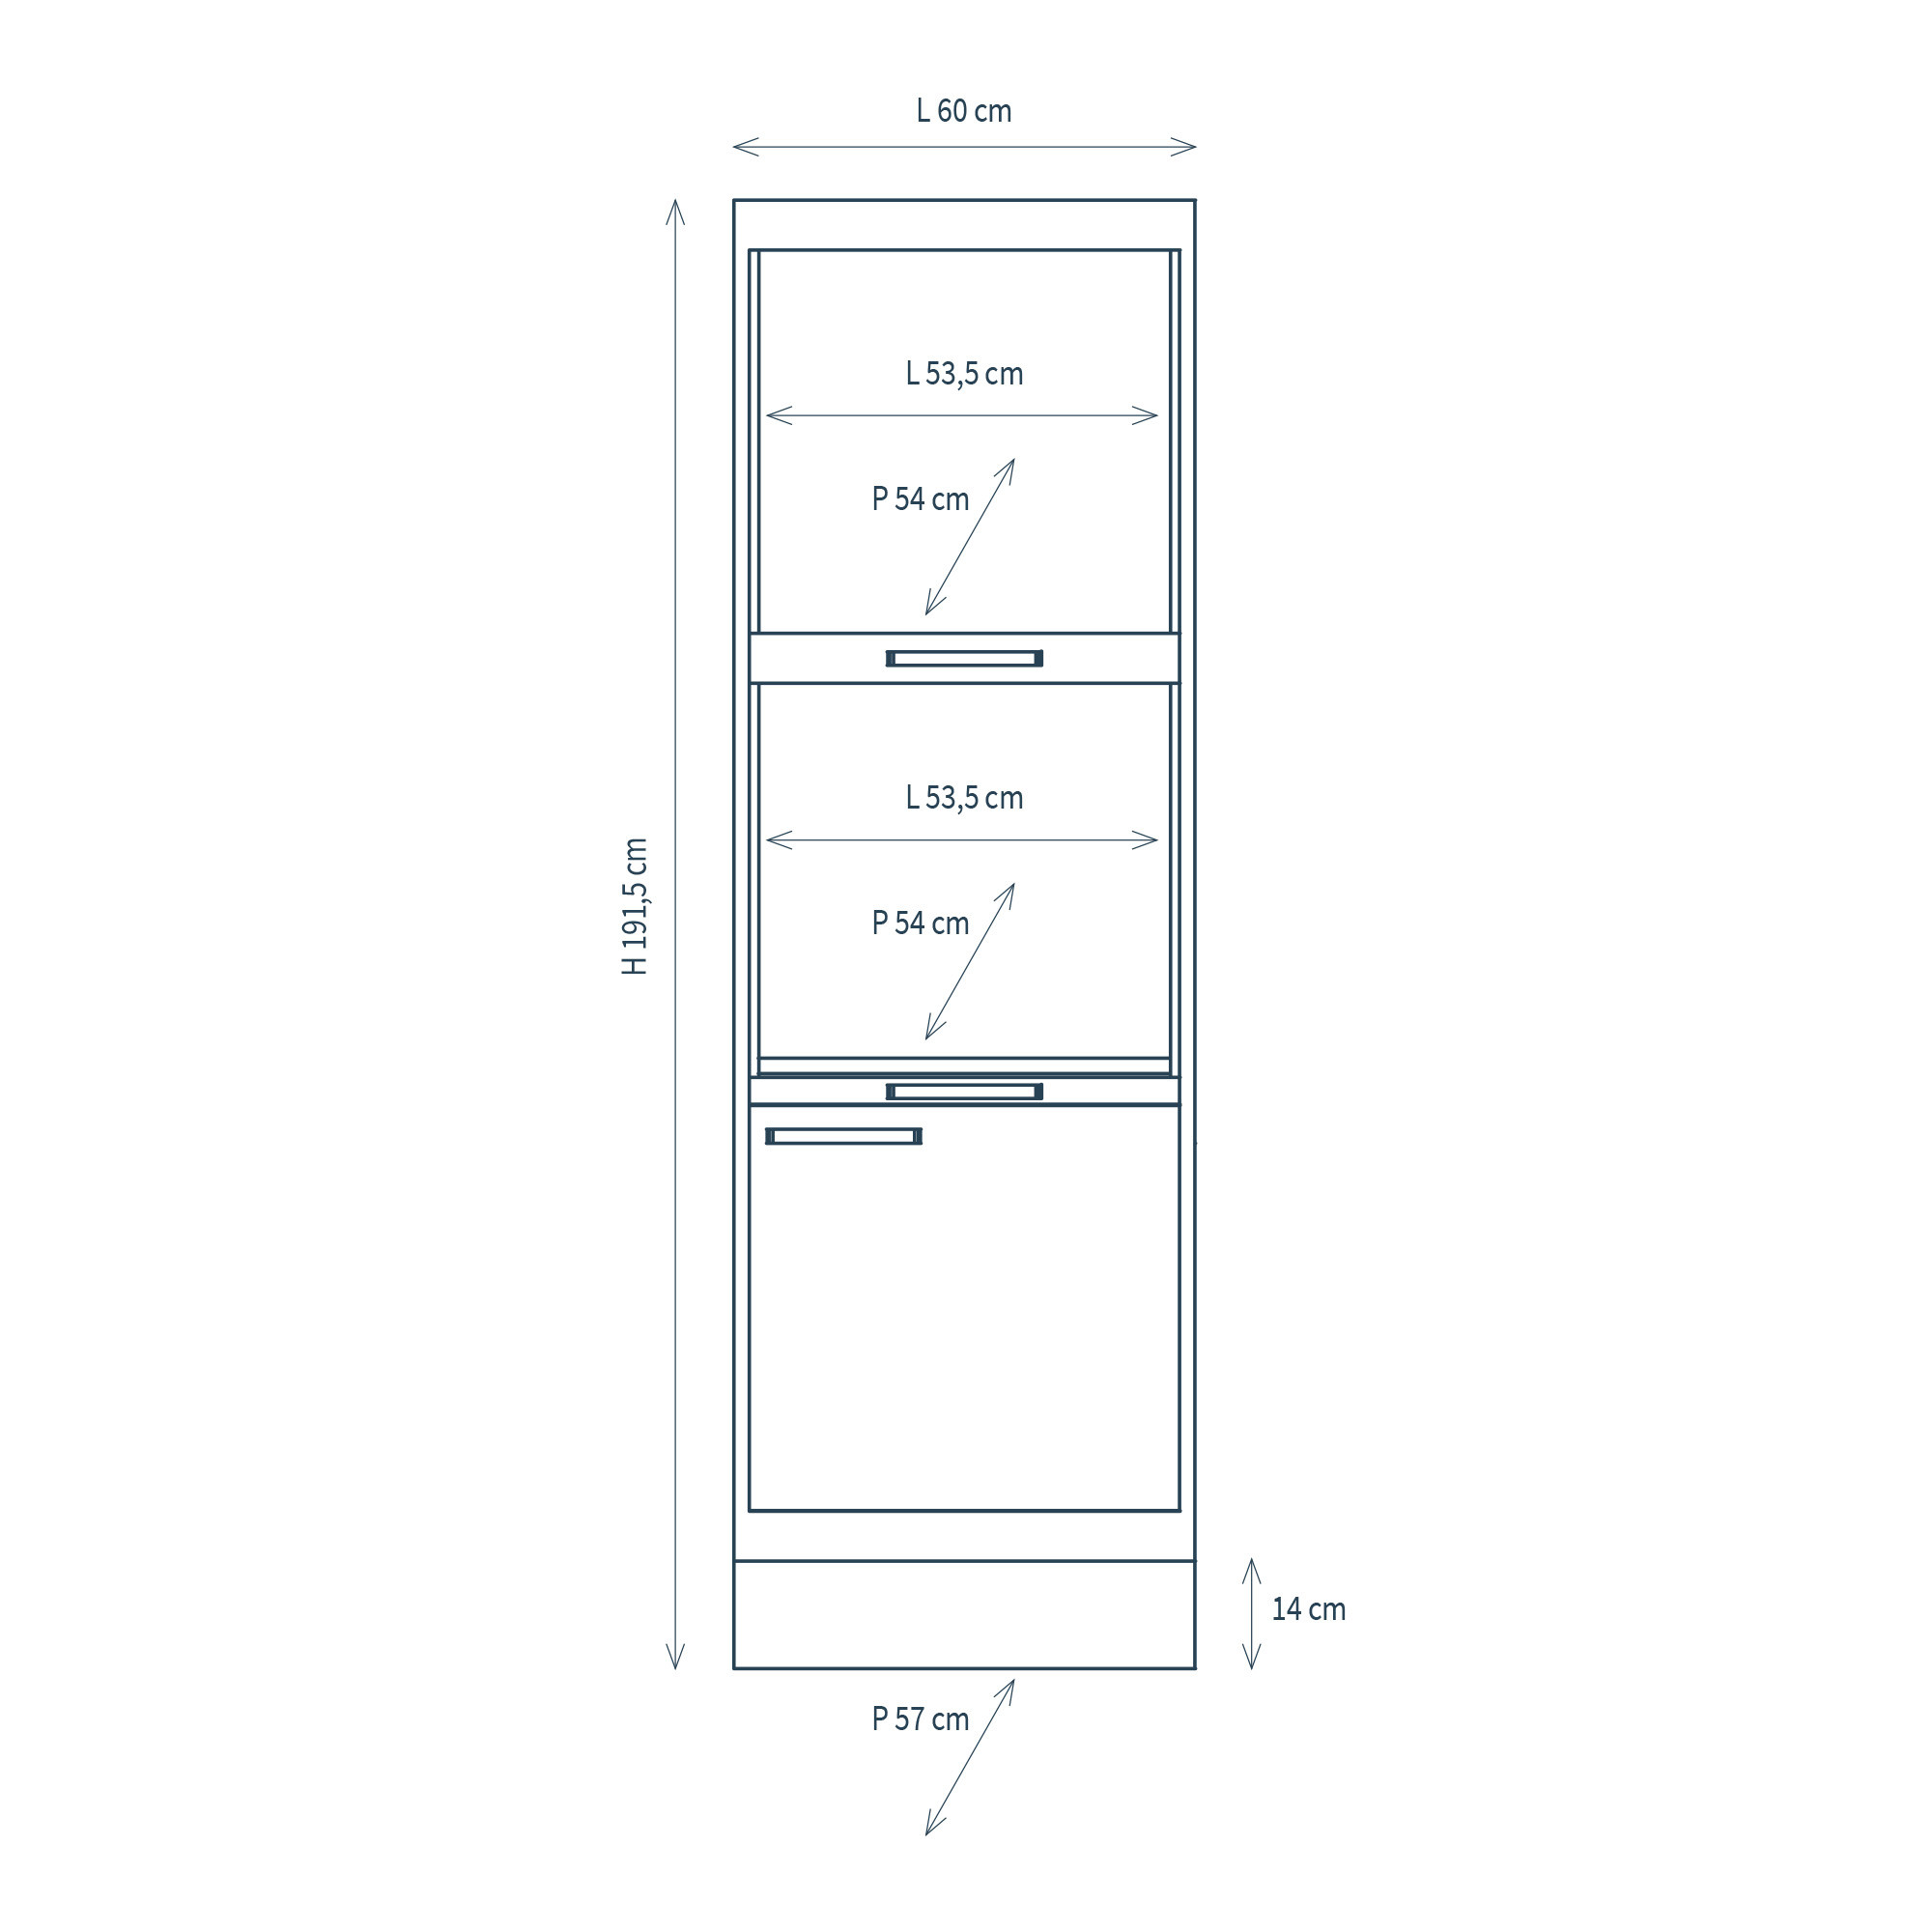 Modulo per mobile componibile professionale con colonna 3 vani, anta e zoccolino